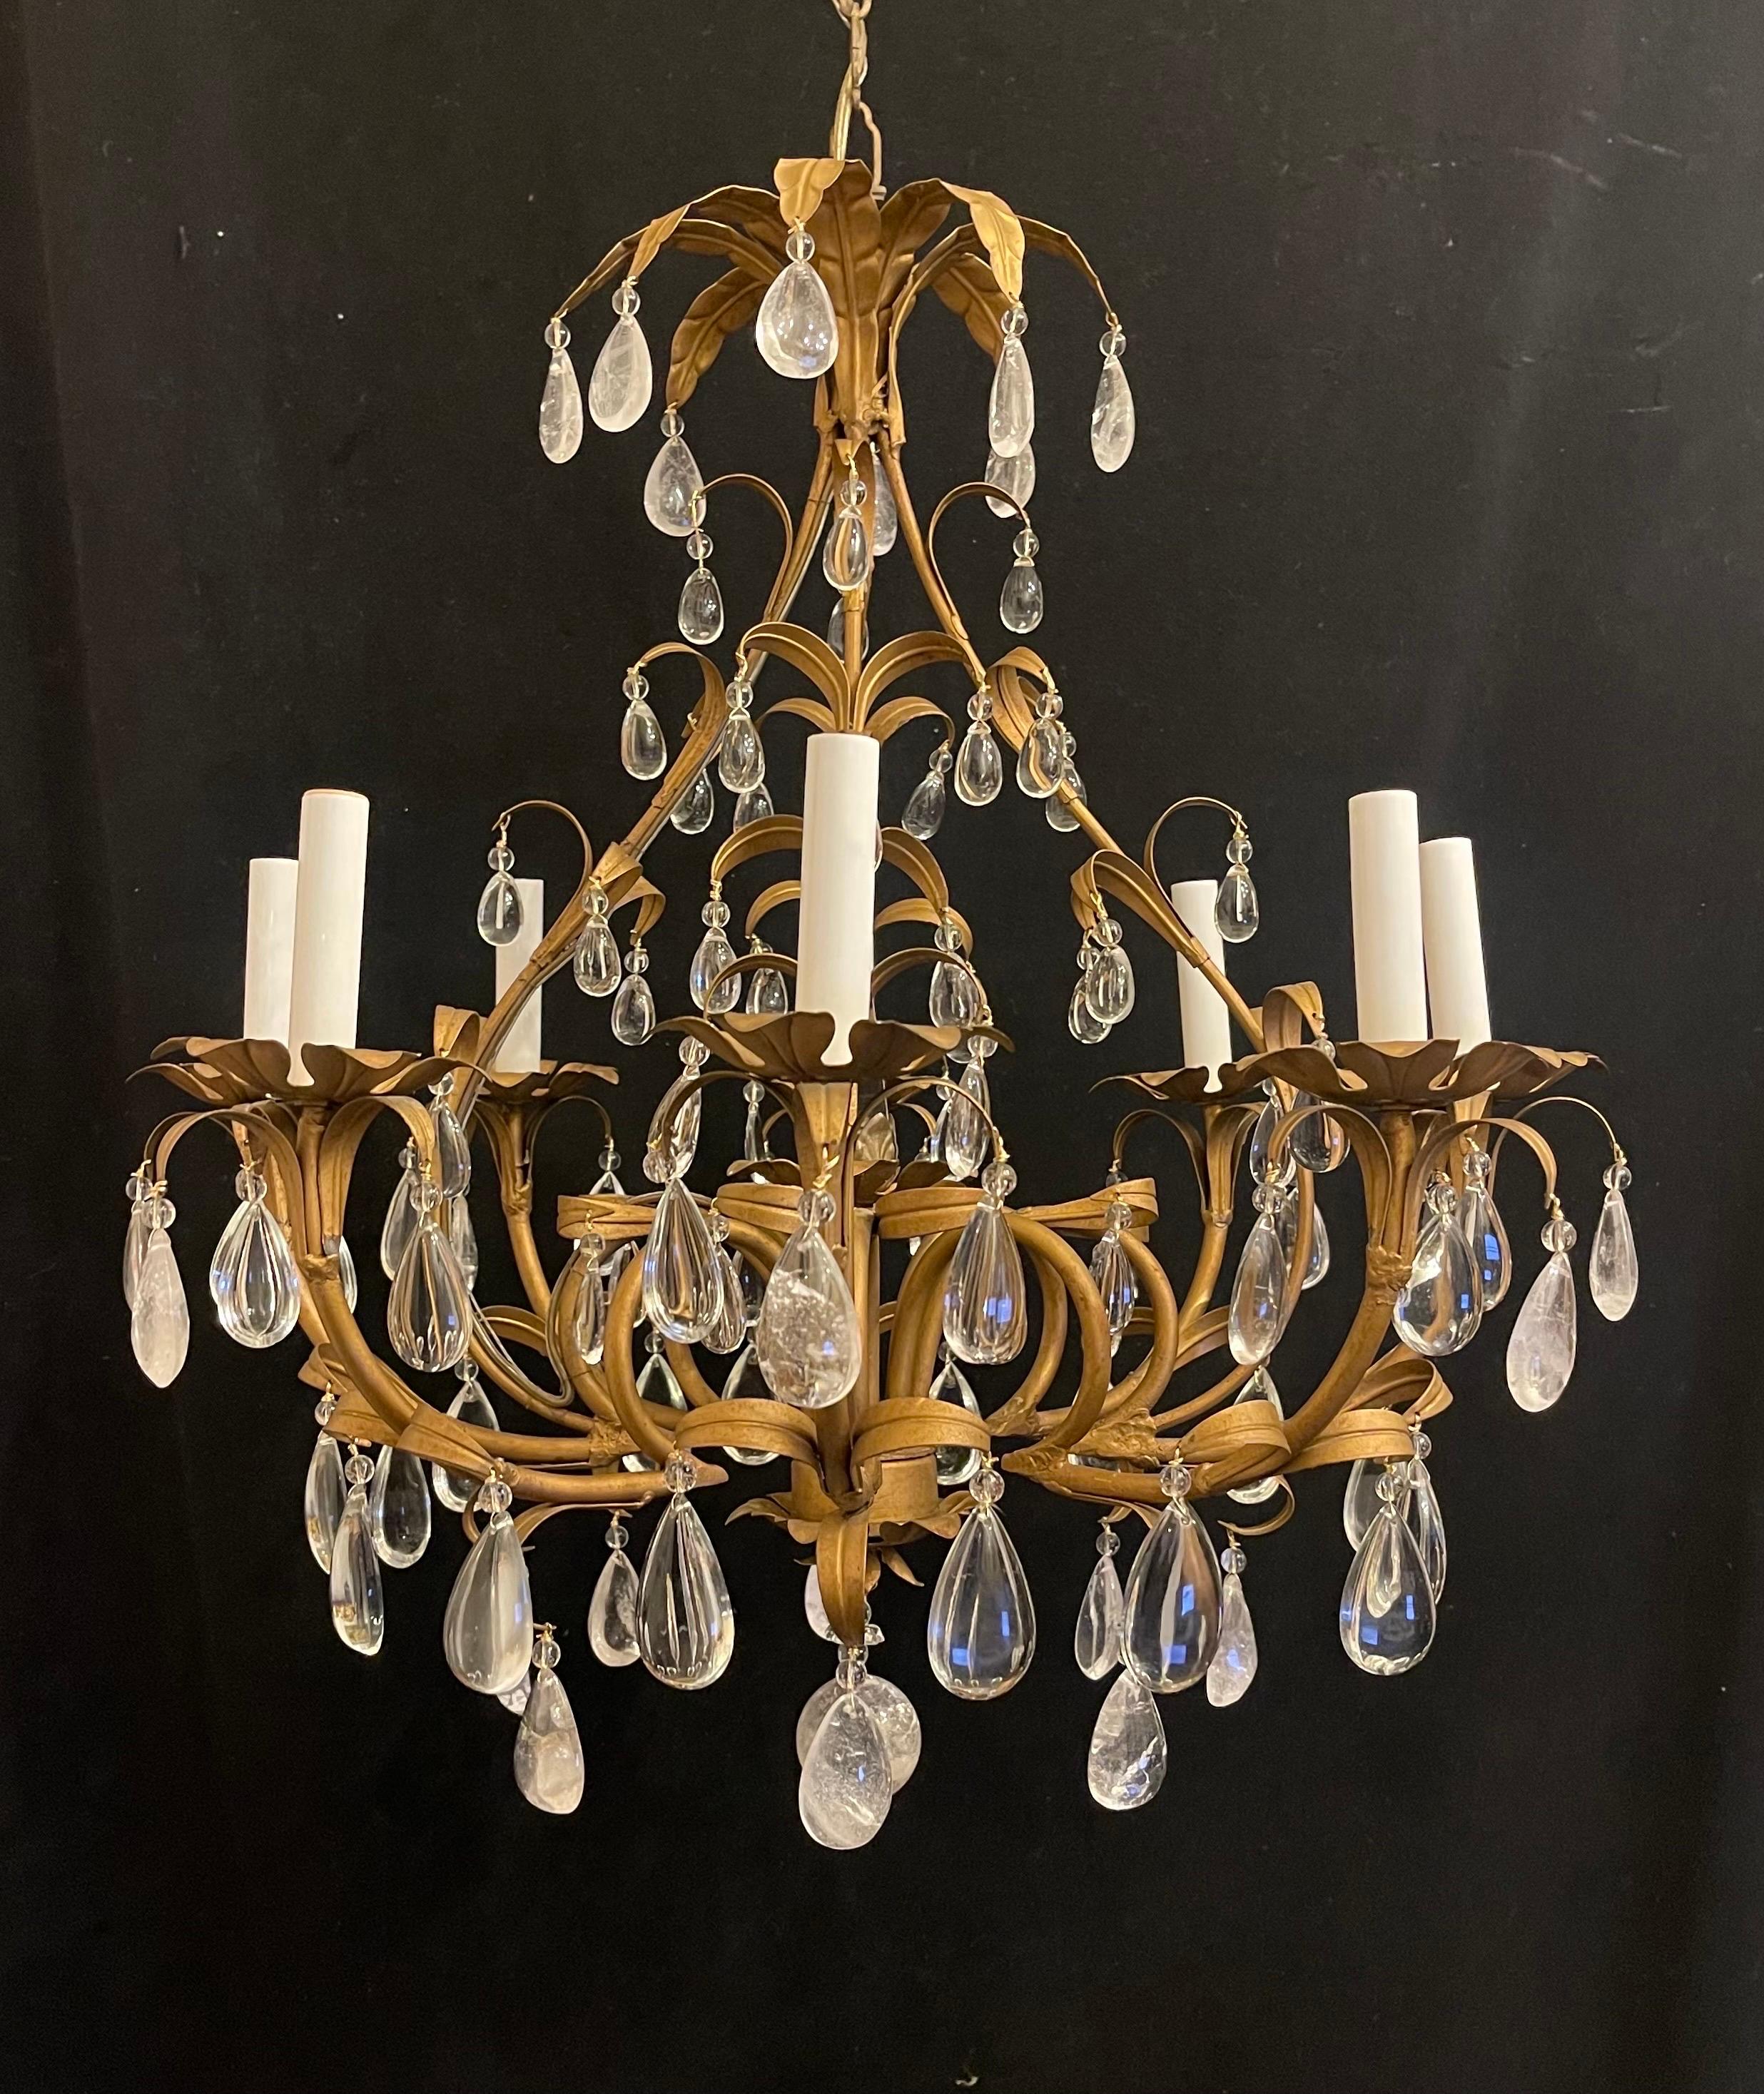 Merveilleux petit lustre à huit chandeliers de style Maison Baguès en cristal de roche / cristal alterné avec des perles en or doré.
Le câblage a été mis à jour, la chaîne de l'auvent et le matériel de montage sont inclus.